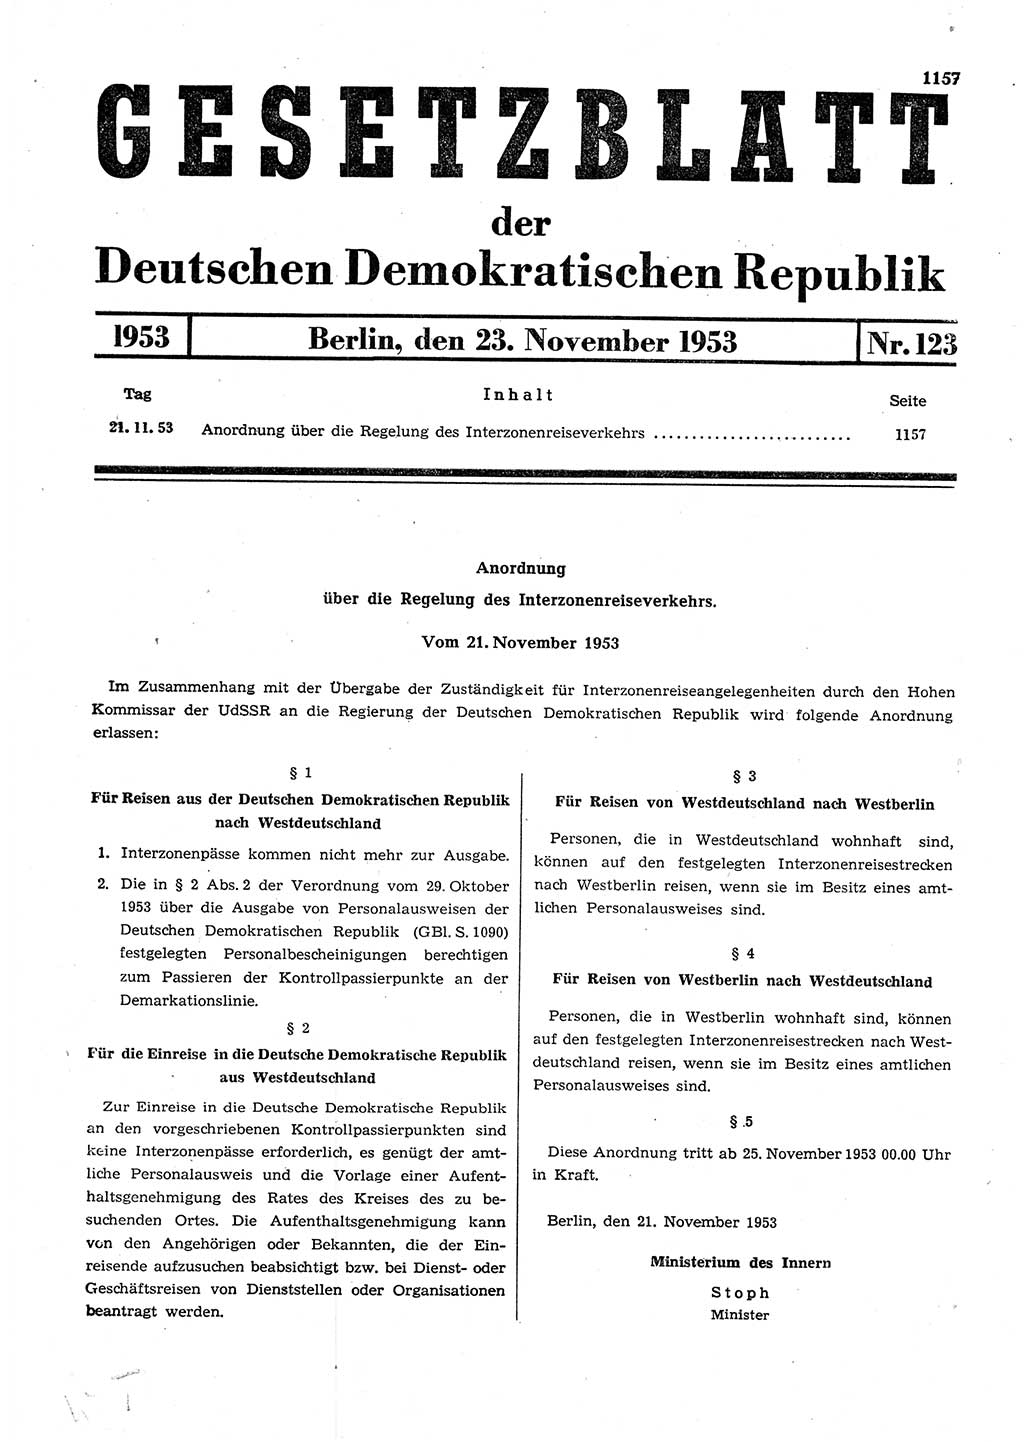 Gesetzblatt (GBl.) der Deutschen Demokratischen Republik (DDR) 1953, Seite 1157 (GBl. DDR 1953, S. 1157)